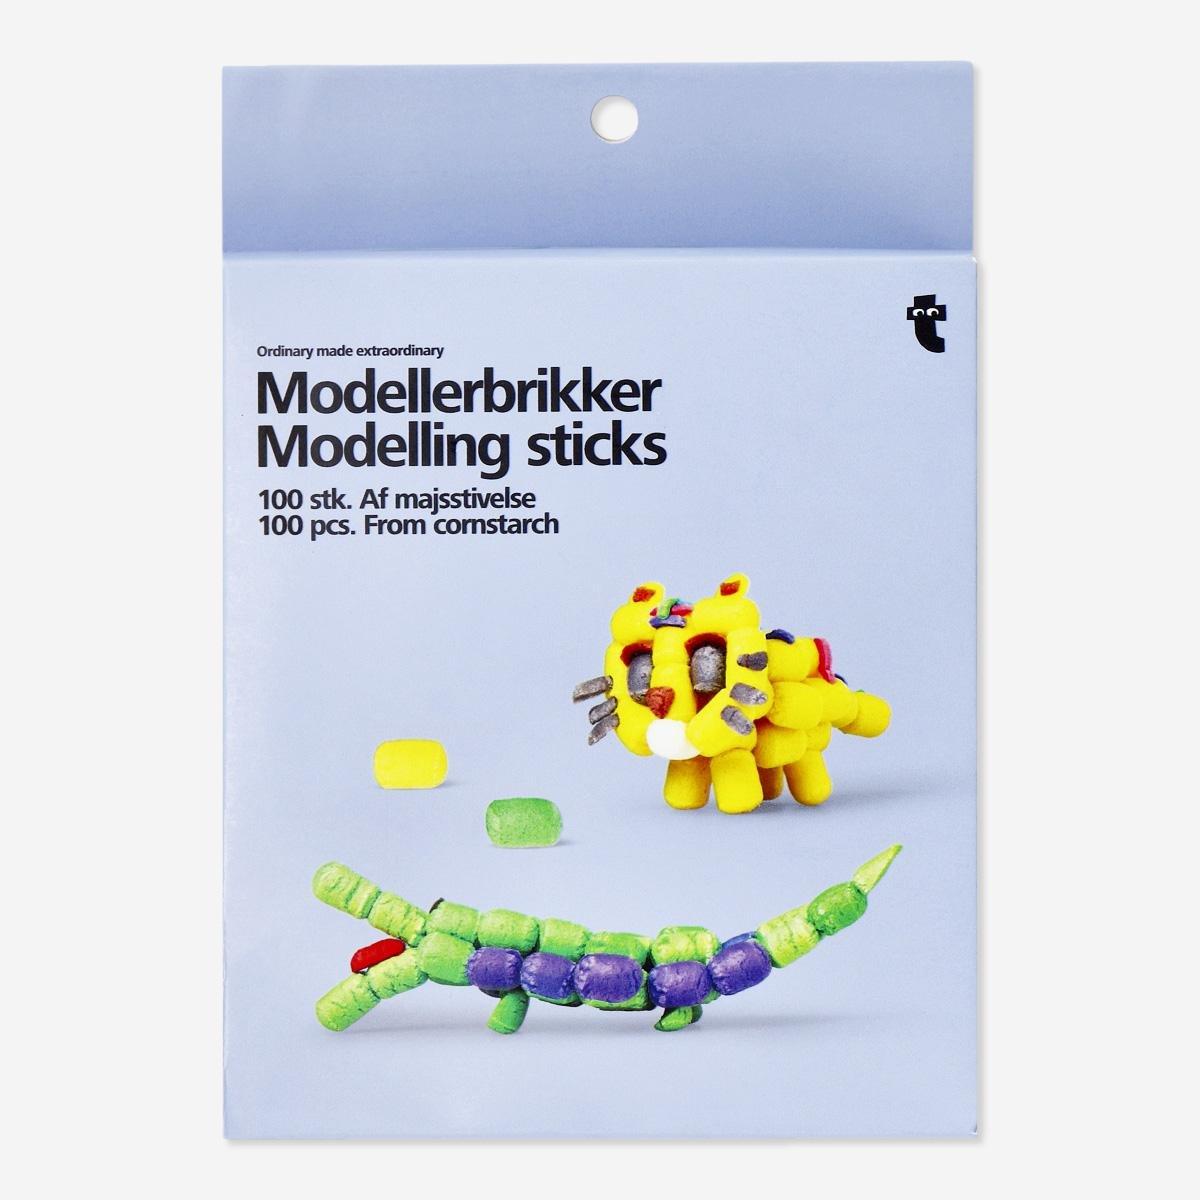 Multicolour modelling sticks